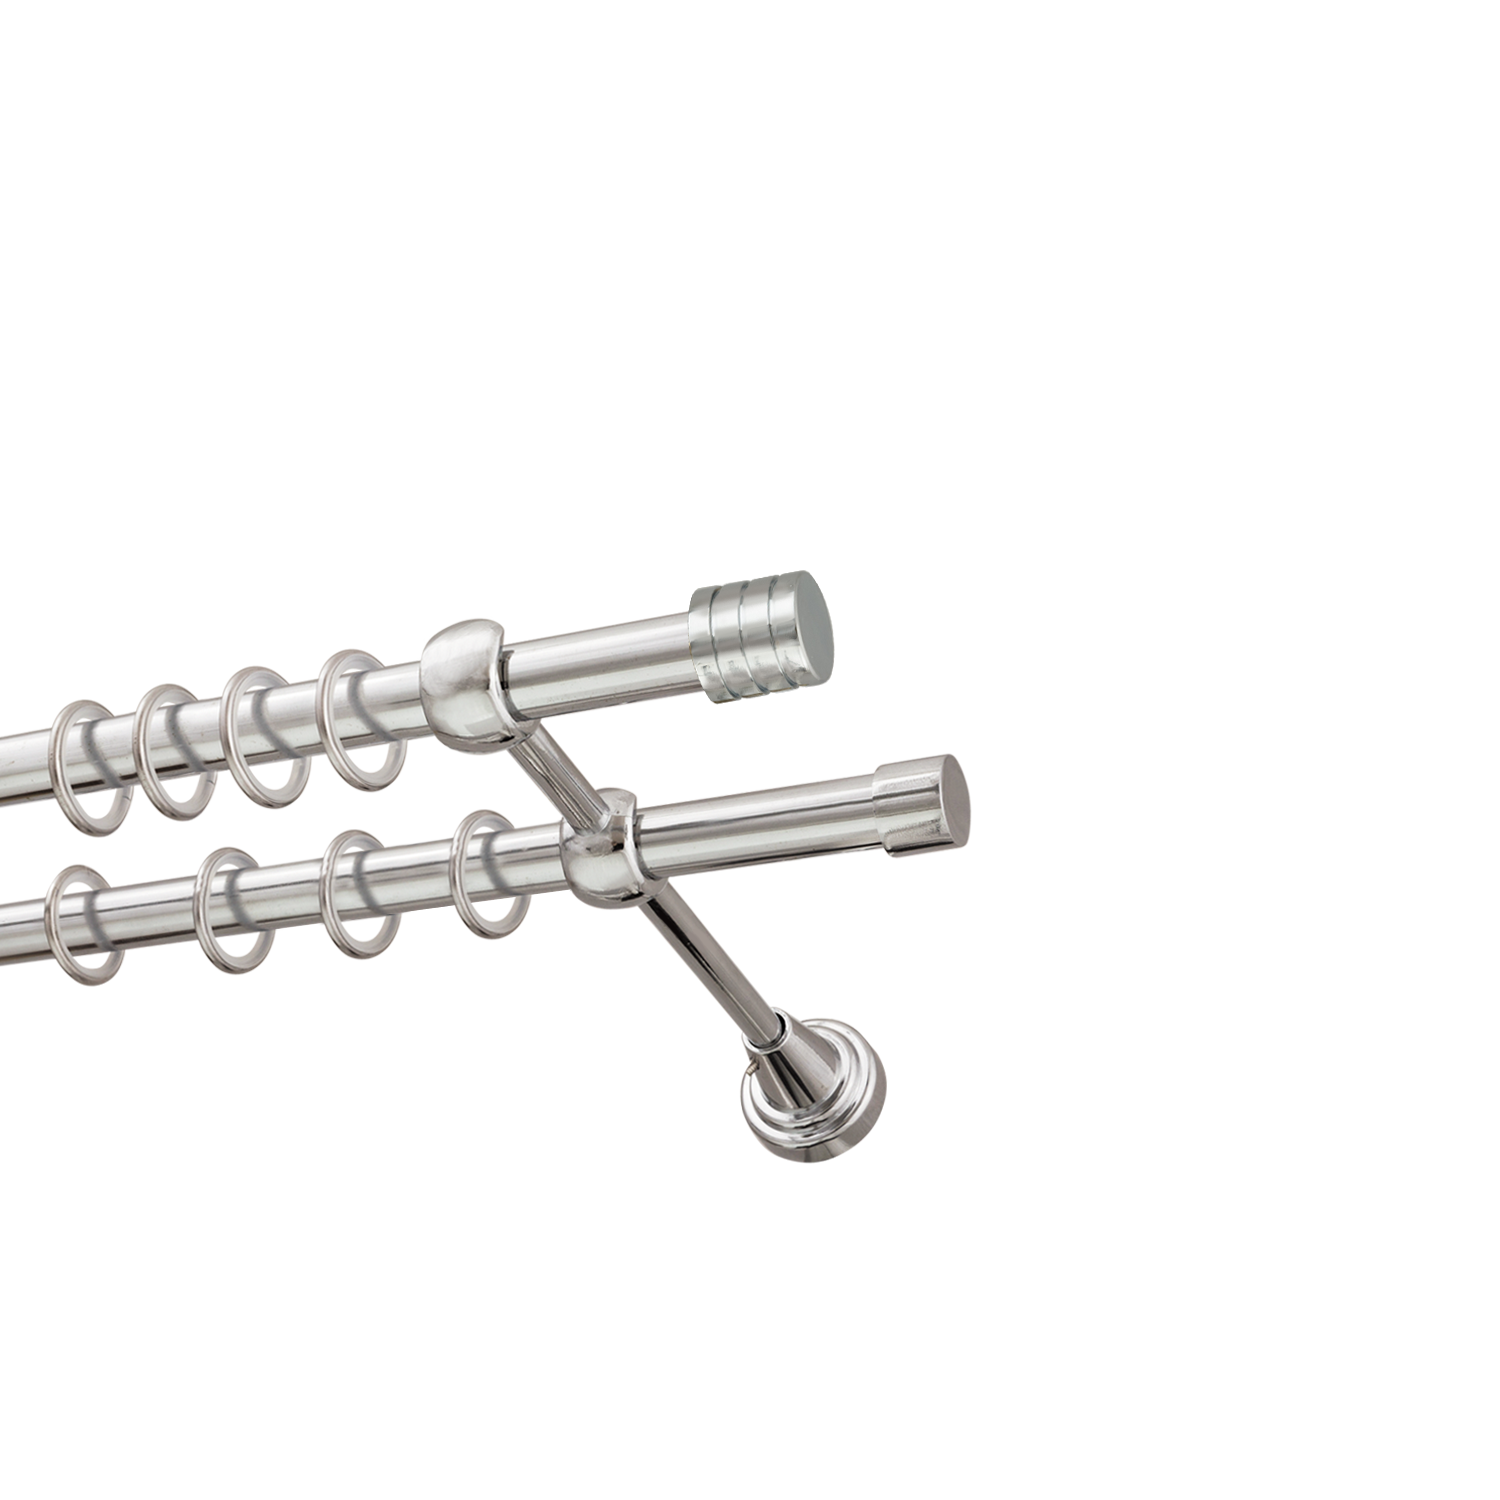 Металлический карниз для штор Подиум, двухрядный 16/16 мм, серебро, гладкая штанга, длина 140 см - фото Wikidecor.ru